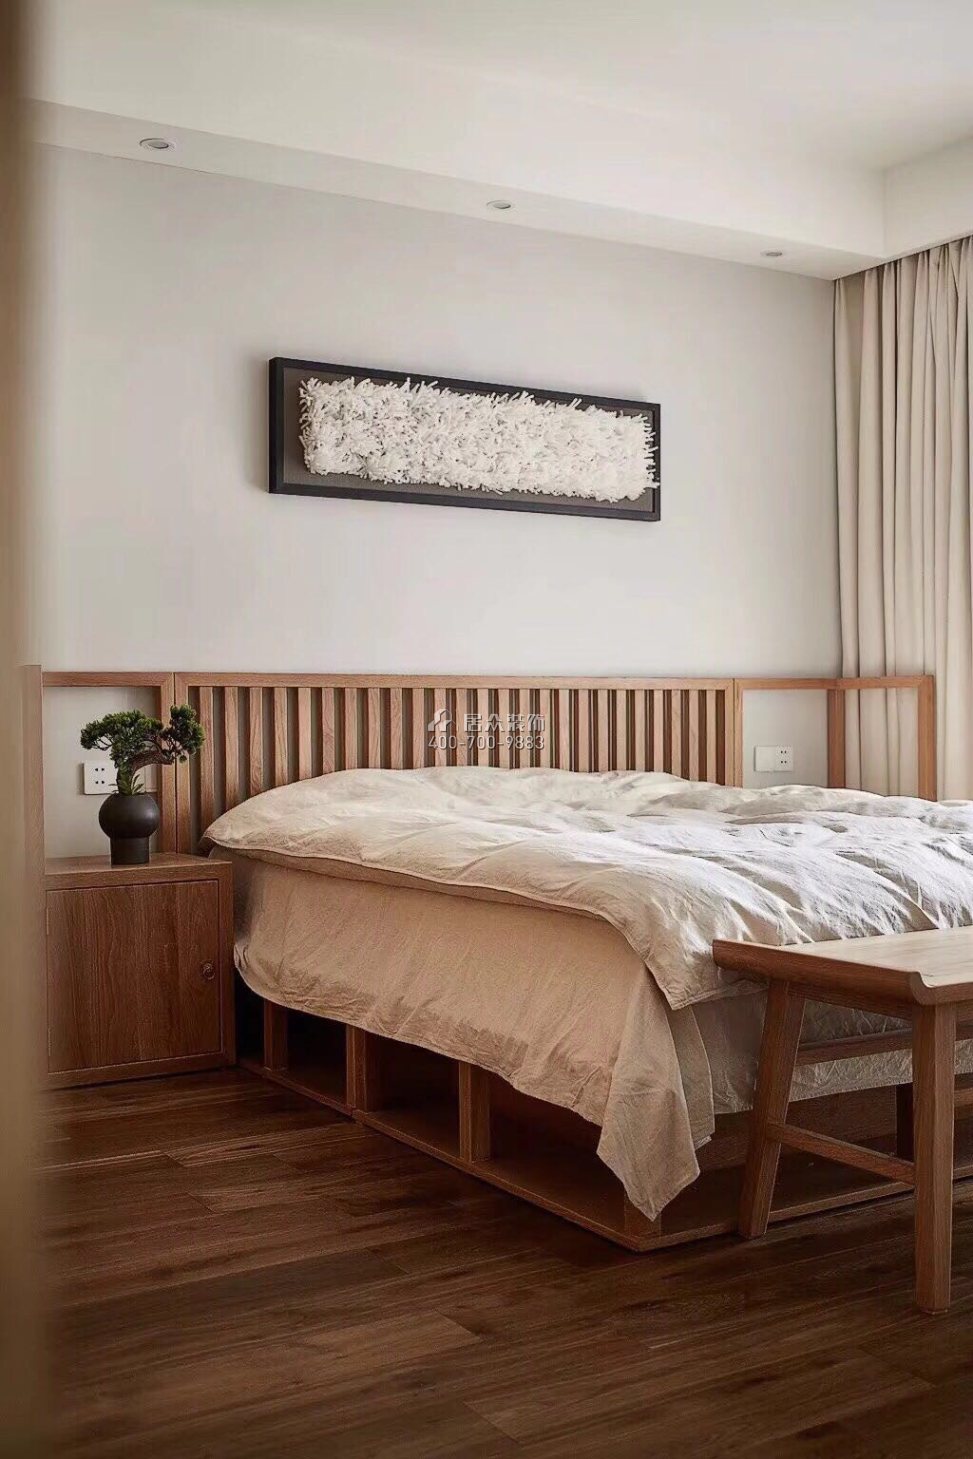 中洲中央公园二期120平方米现代简约风格平层户型卧室装修效果图